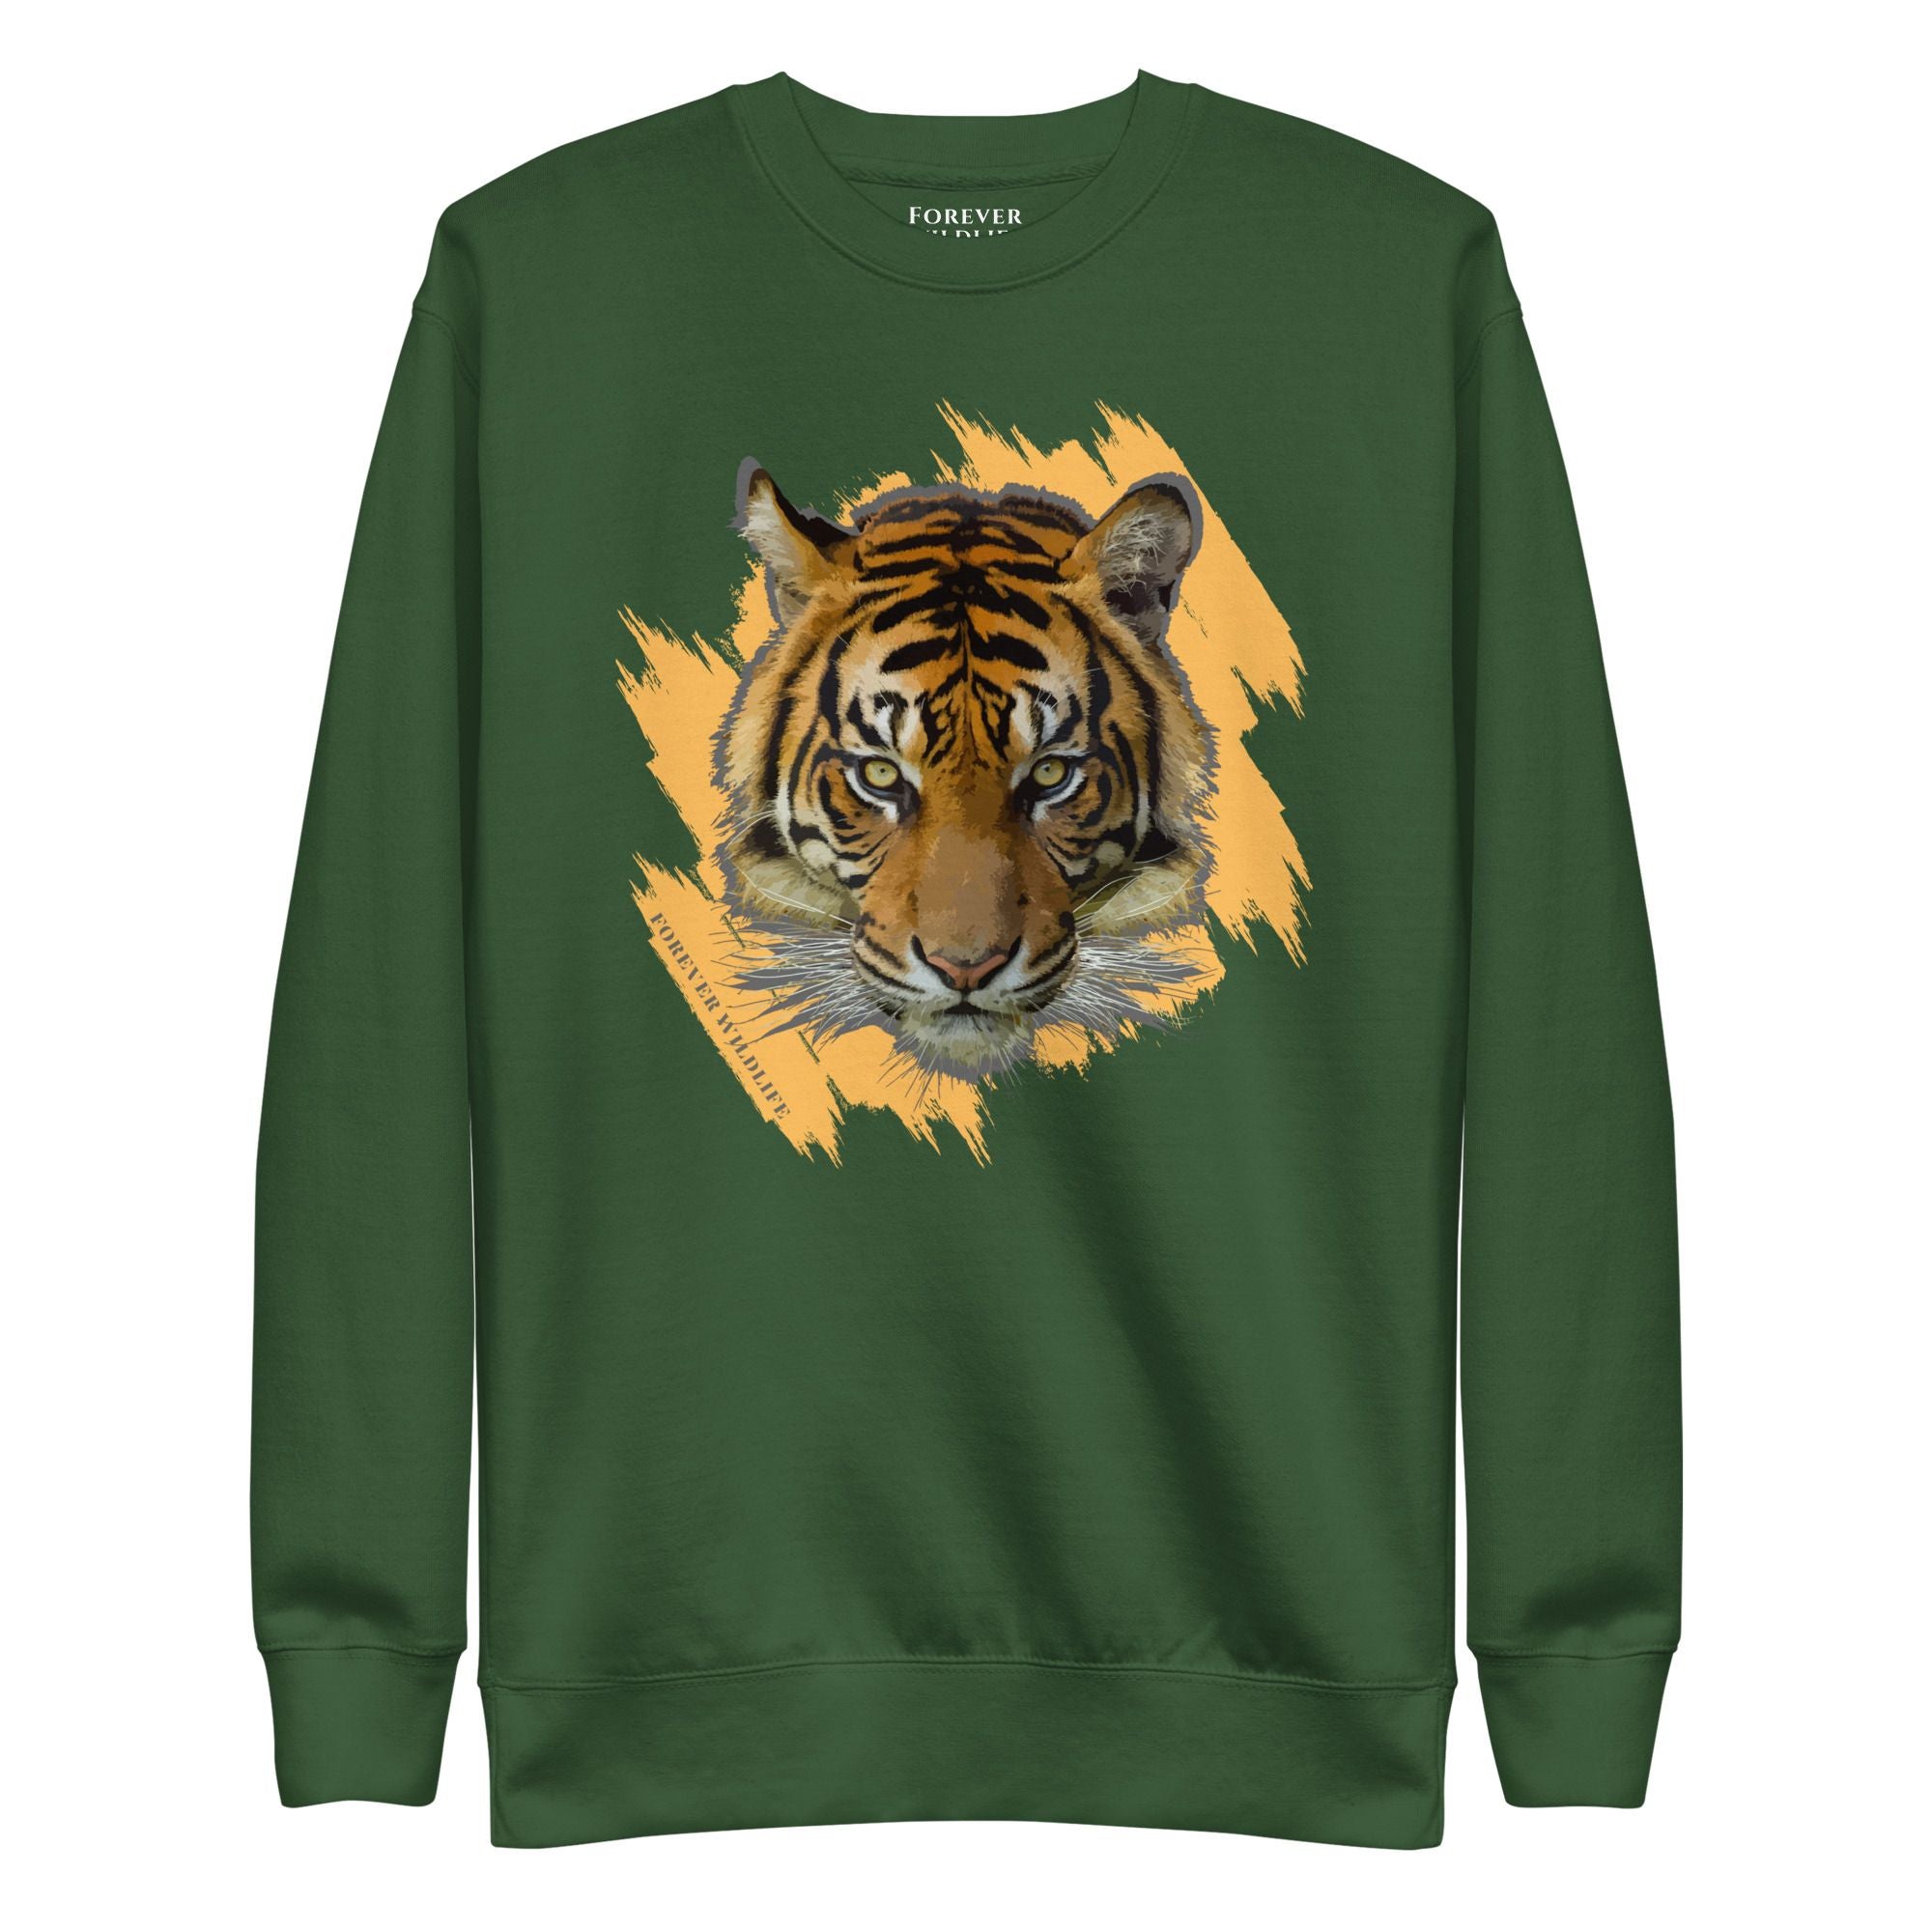 Tiger Sweatshirt in Forest-Premium Wildlife Animal Inspiration Sweatshirt Design, part of Wildlife Sweatshirts & Clothing from Forever Wildlife.